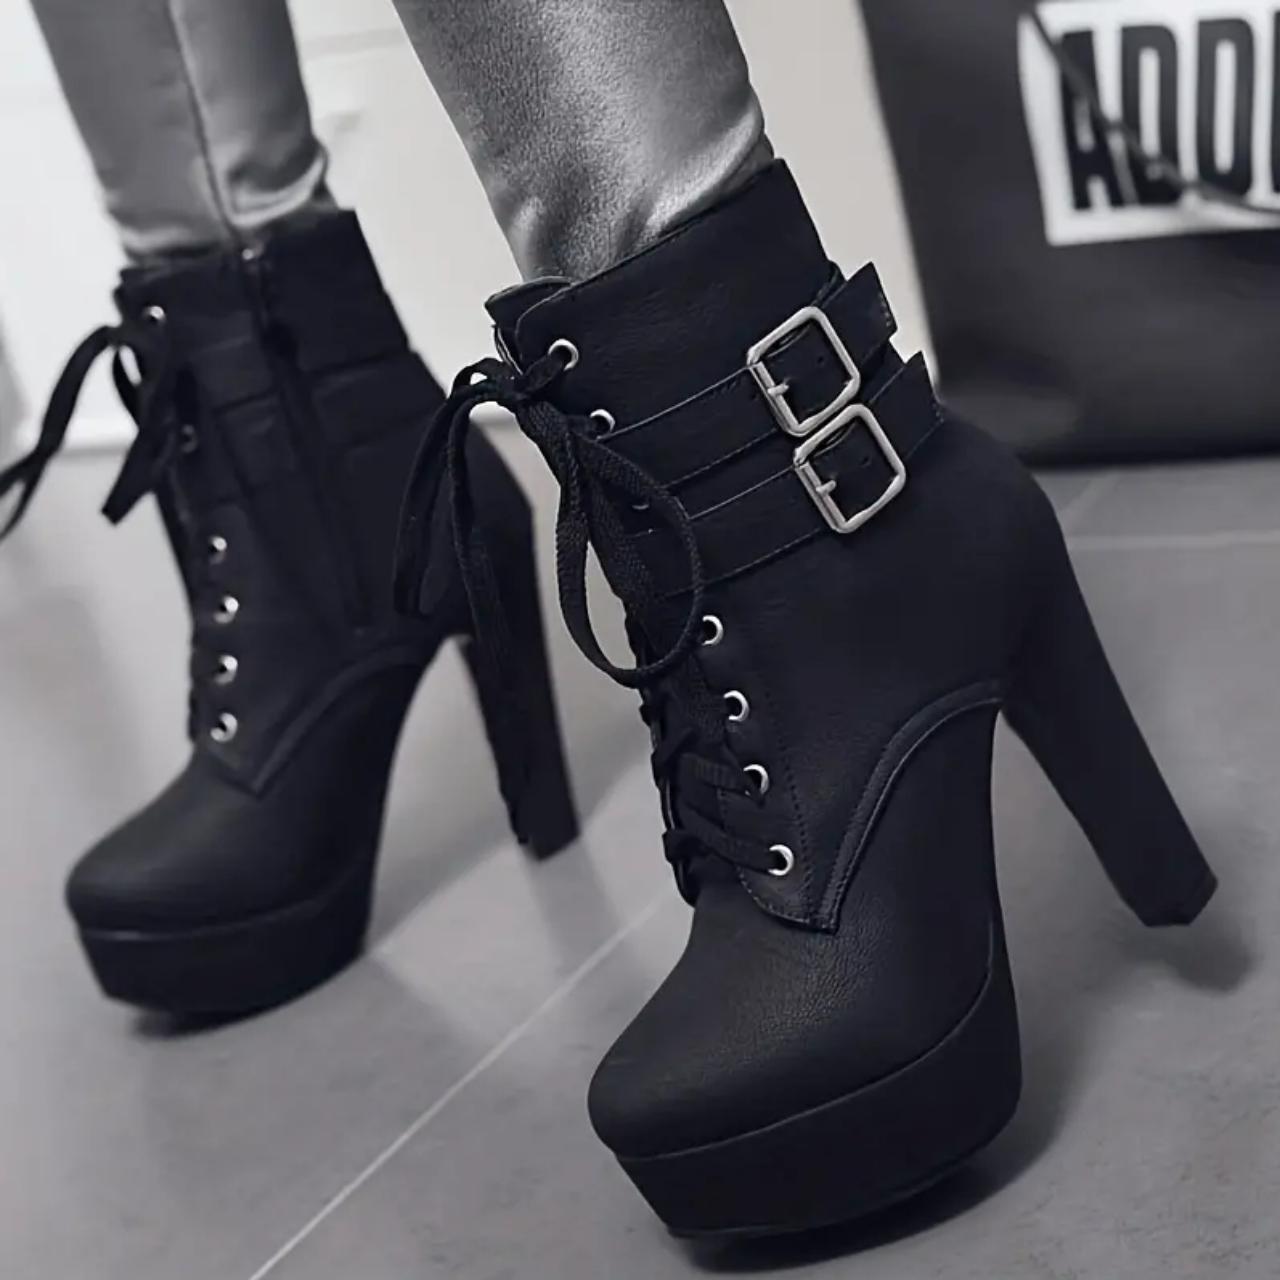 Women's Platform Heeled Boots, Fashion Solid Color... - Depop